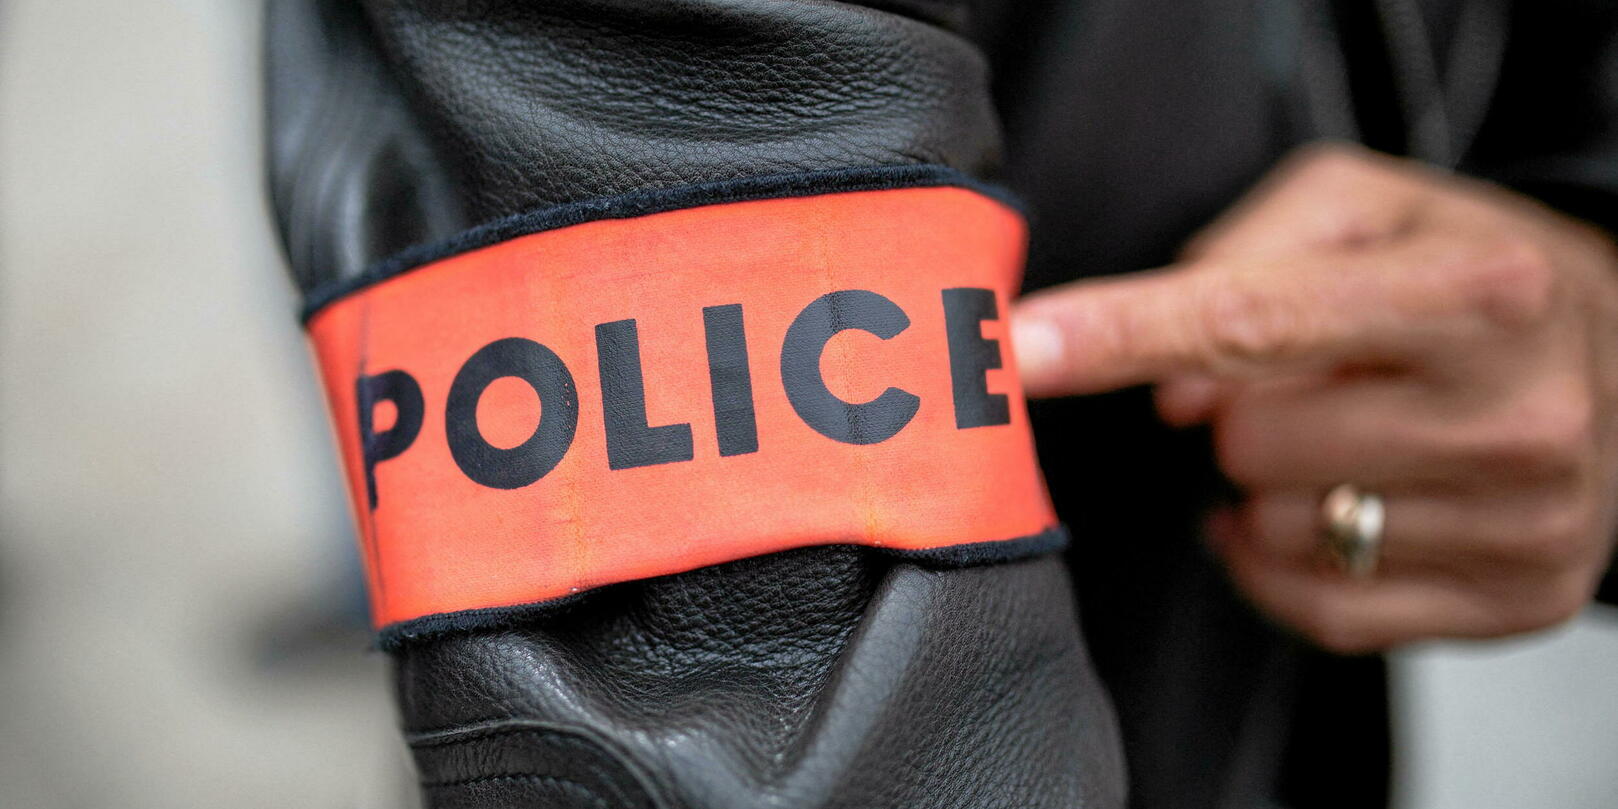 Menaces de décapitation dans les lycées : deux frères interpellés dans les Hauts-de-Seine